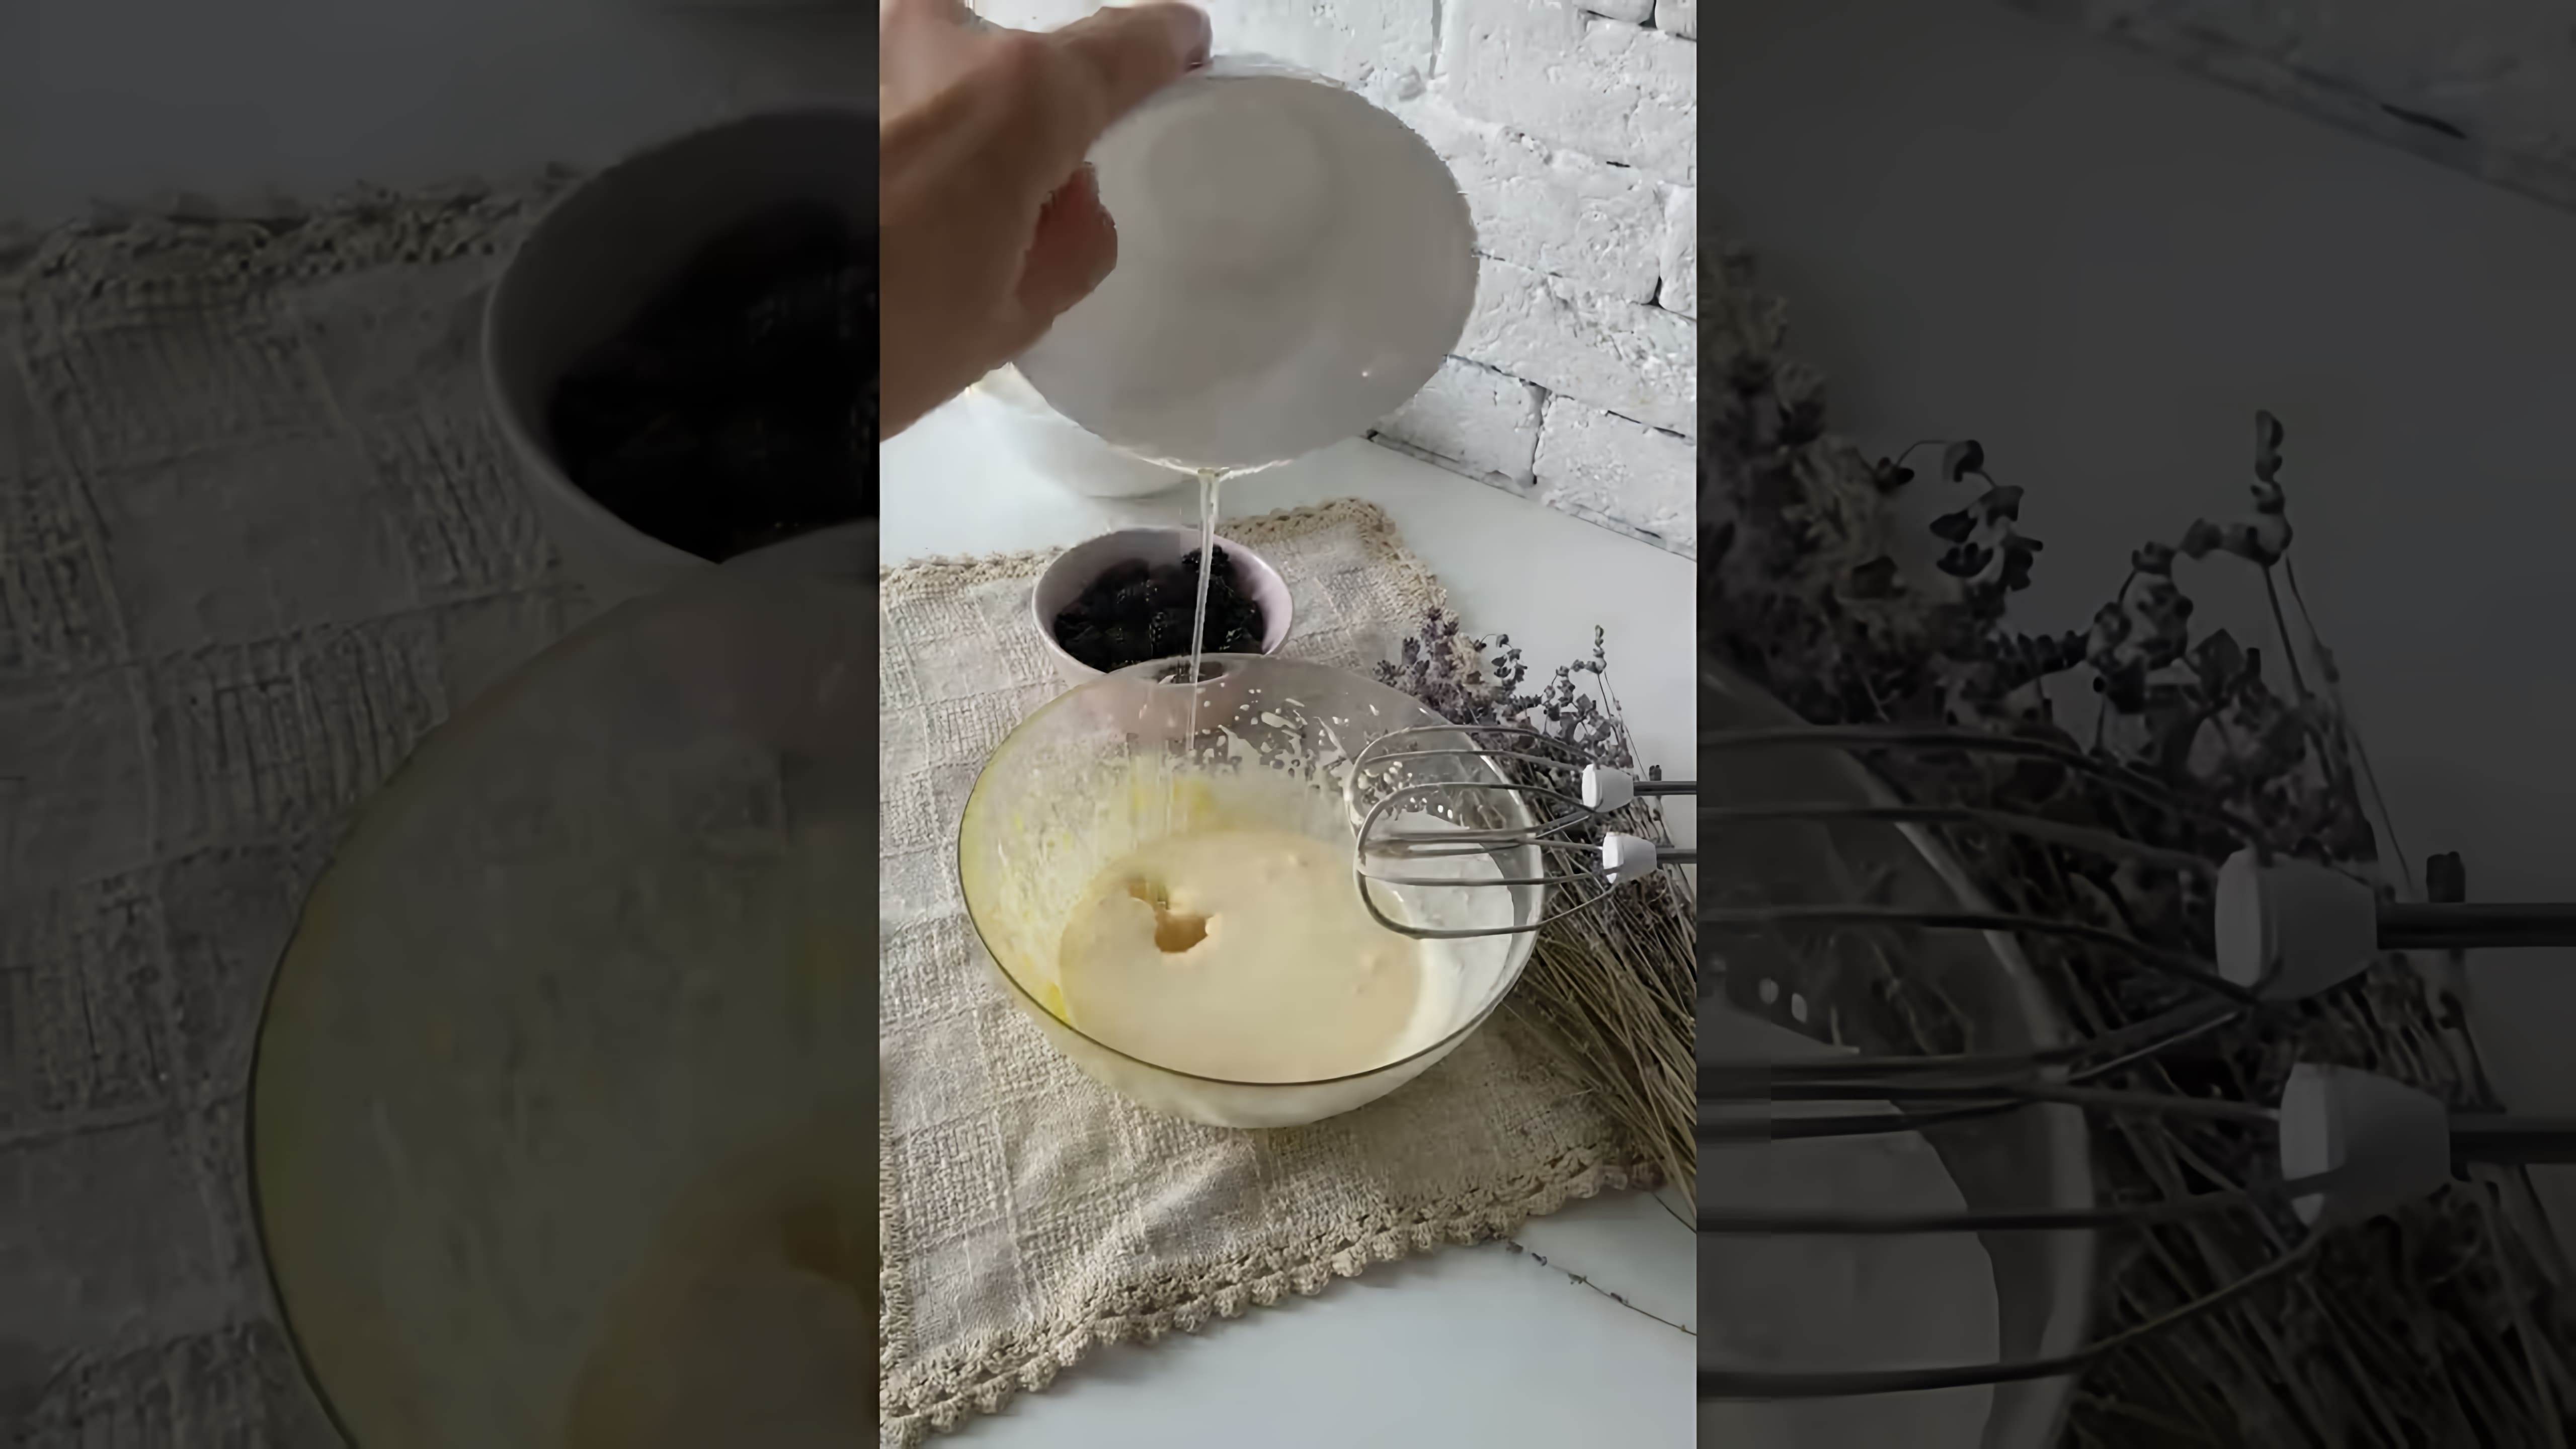 "Самый вкусный пирог с ежевикой" - это видео-ролик, который демонстрирует процесс приготовления вкусного и ароматного пирога с ежевикой